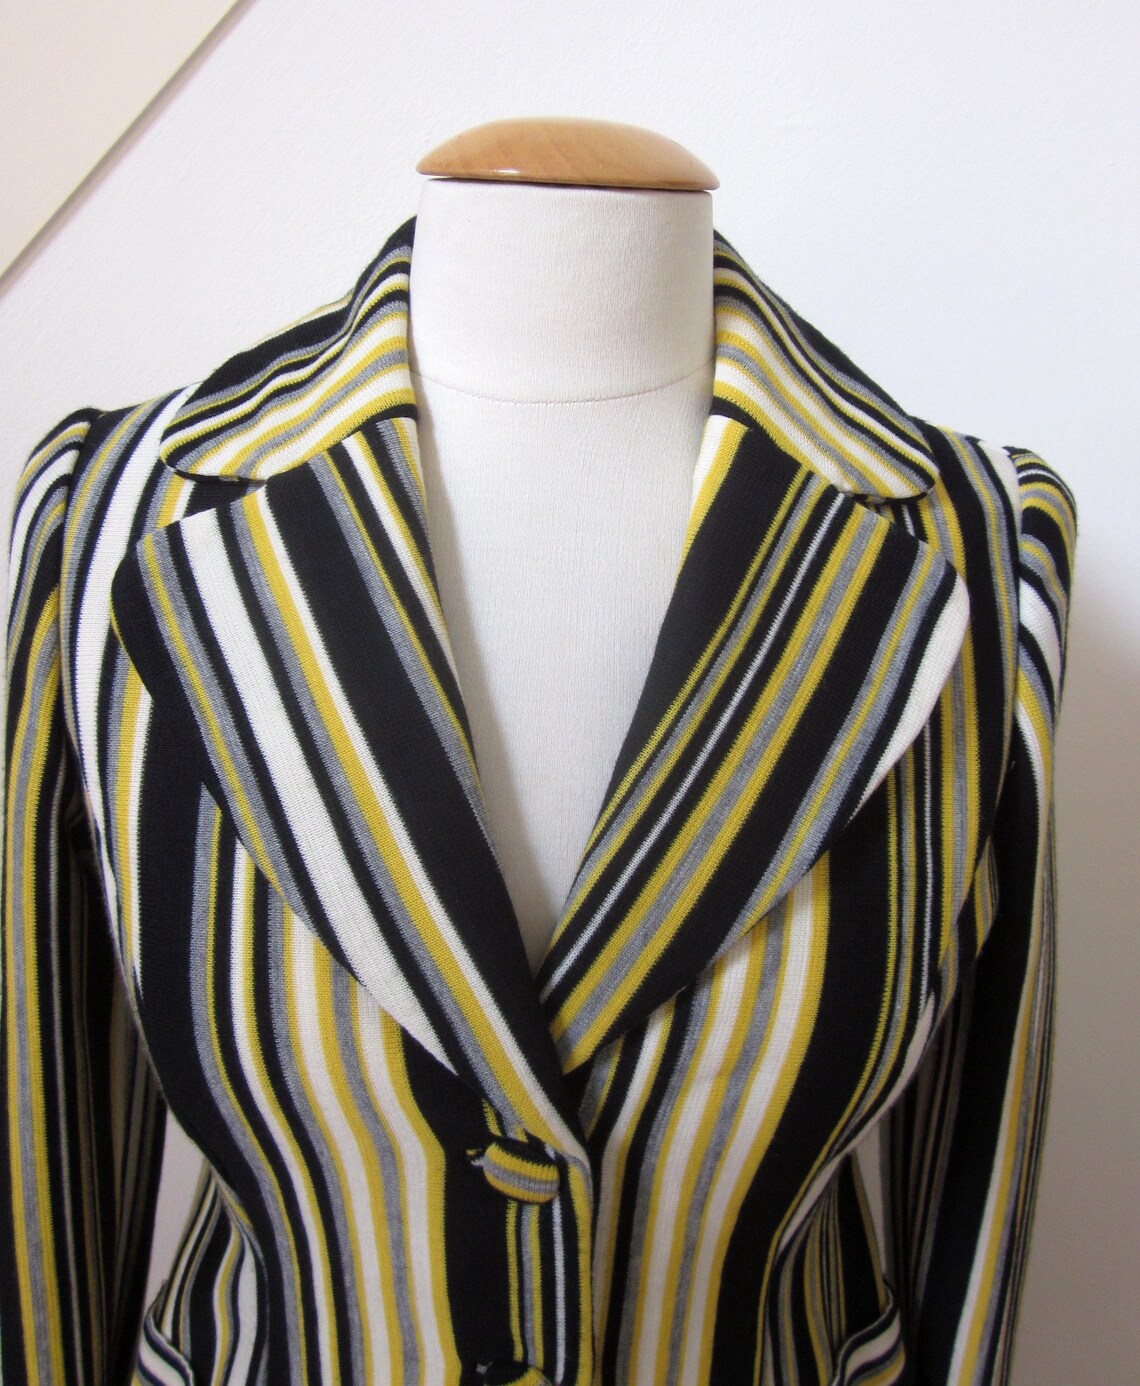 Mod Jacket / Fits S / 60s Striped Jacket / Mod Knit Jacket / - Etsy